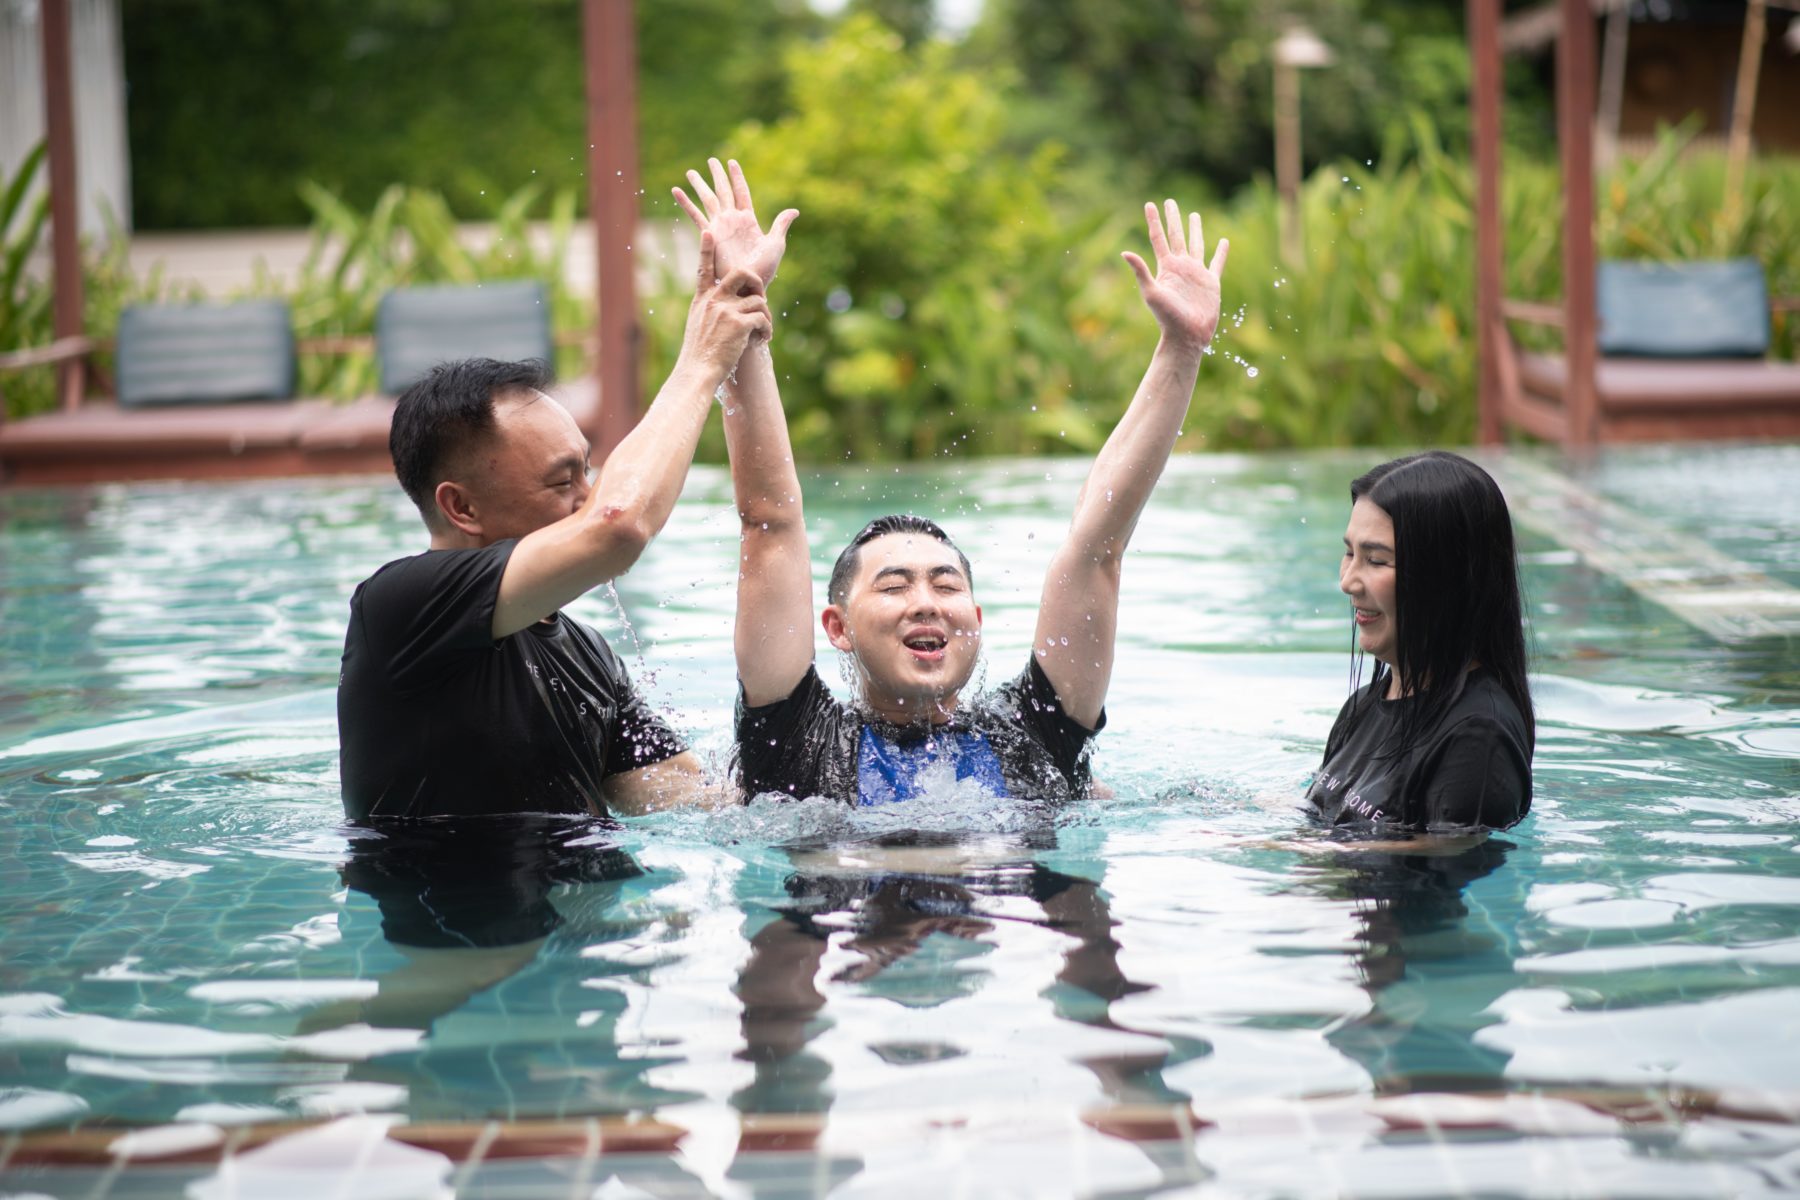 Spiritual or water baptism